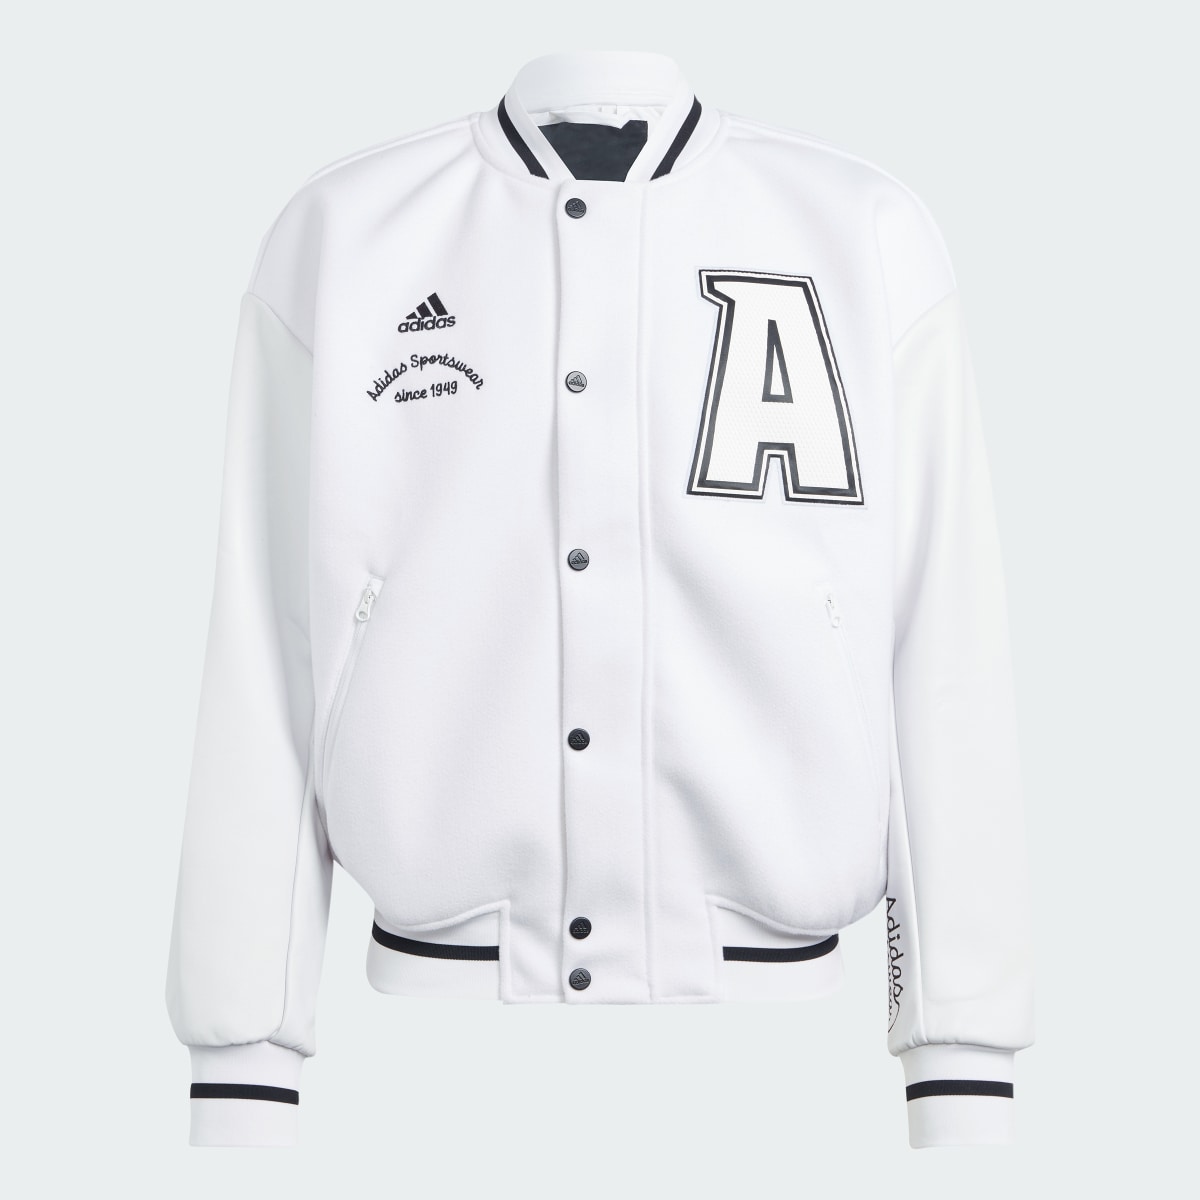 Adidas Collegiate Premium Jacket. 4